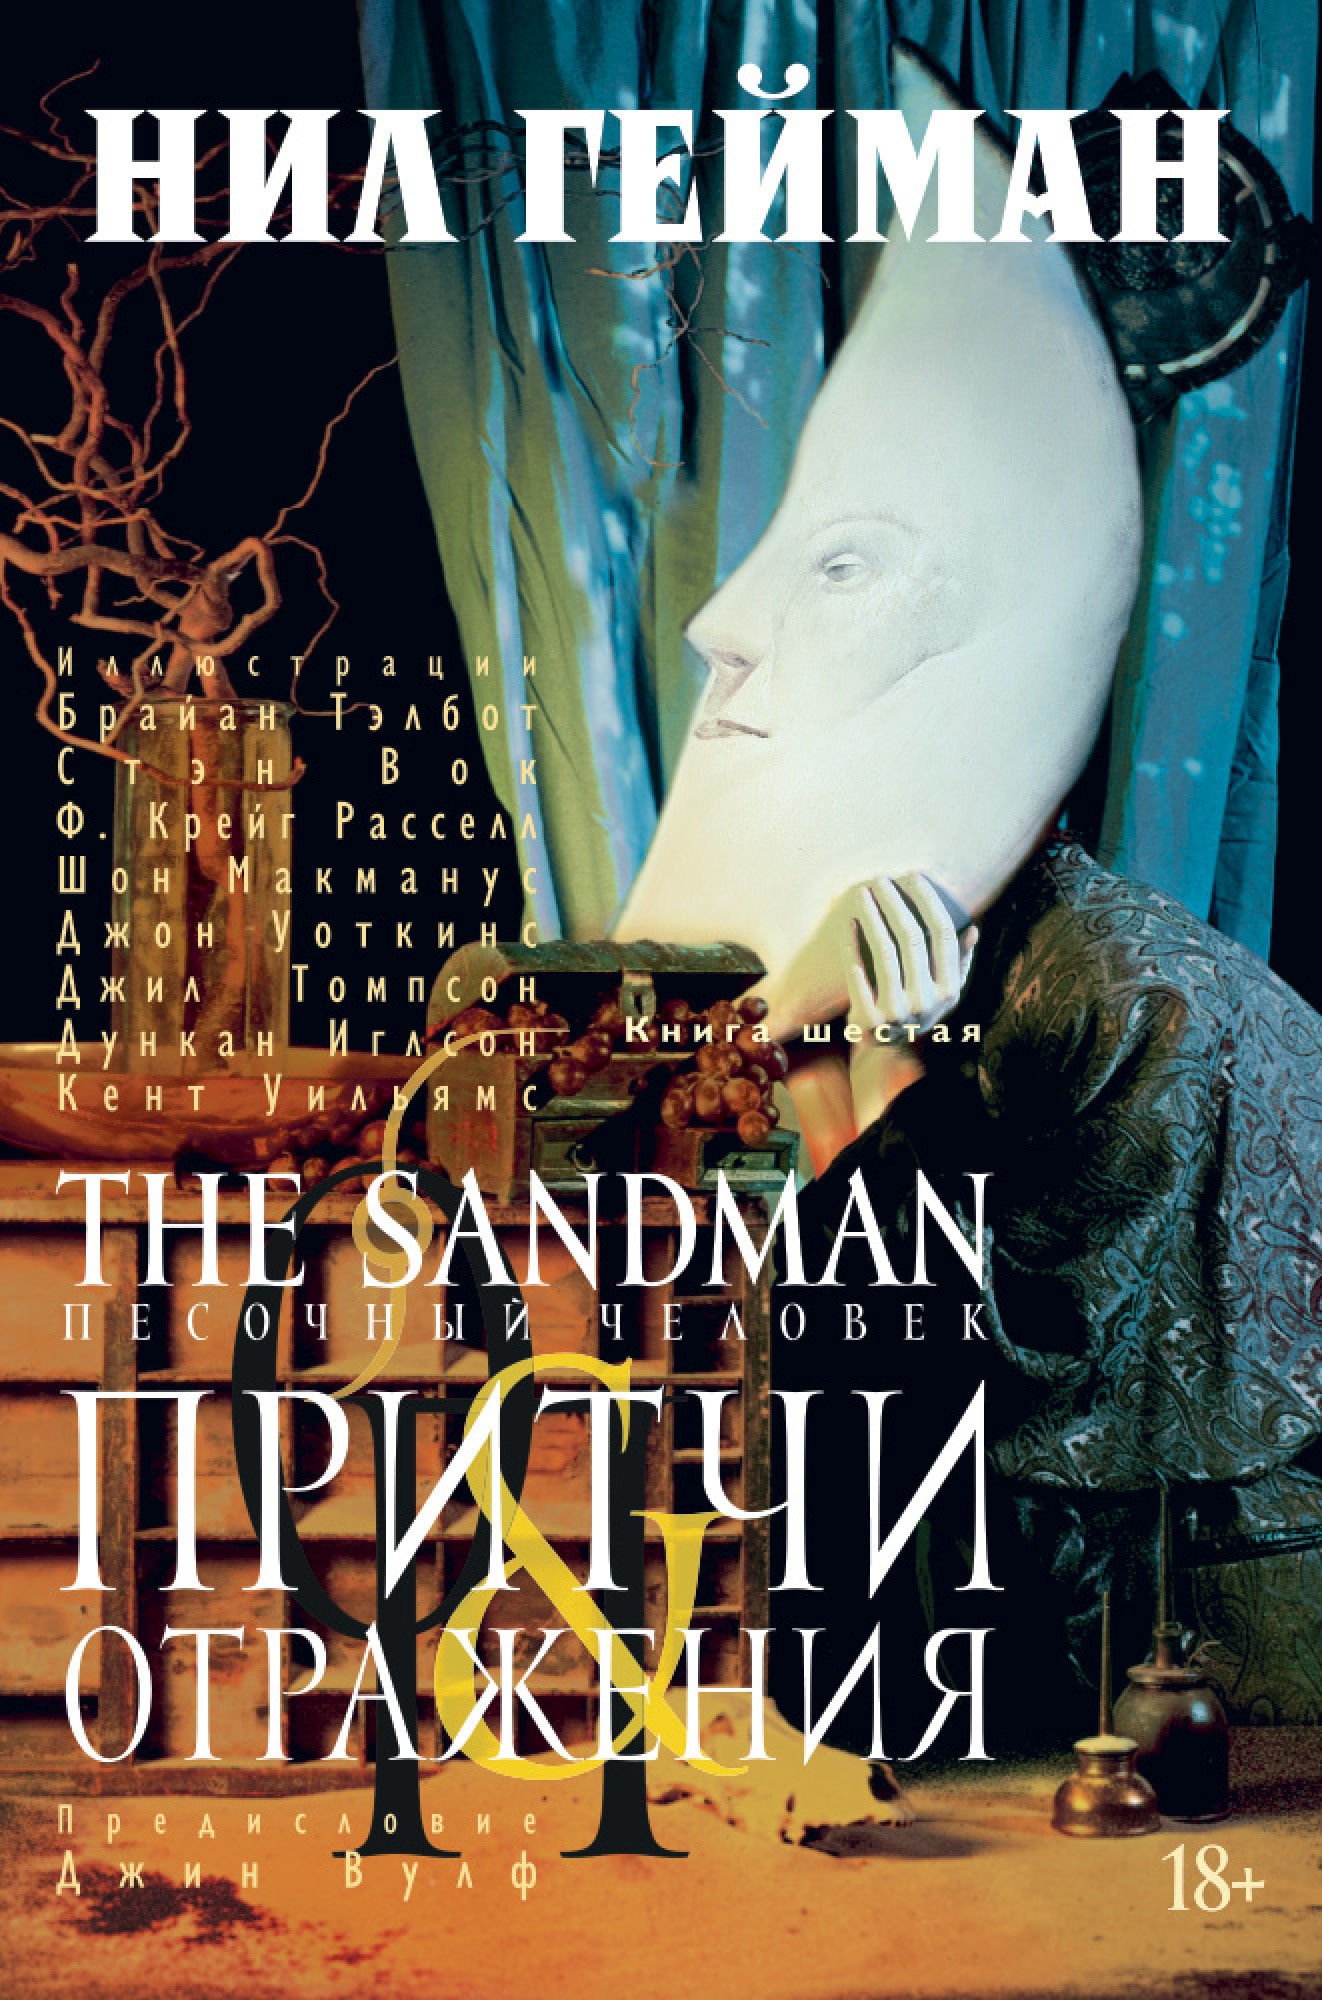 Book “The Sandman. Песочный человек. Книга 6. Притчи и отражения” by Нил Гейман — 2021